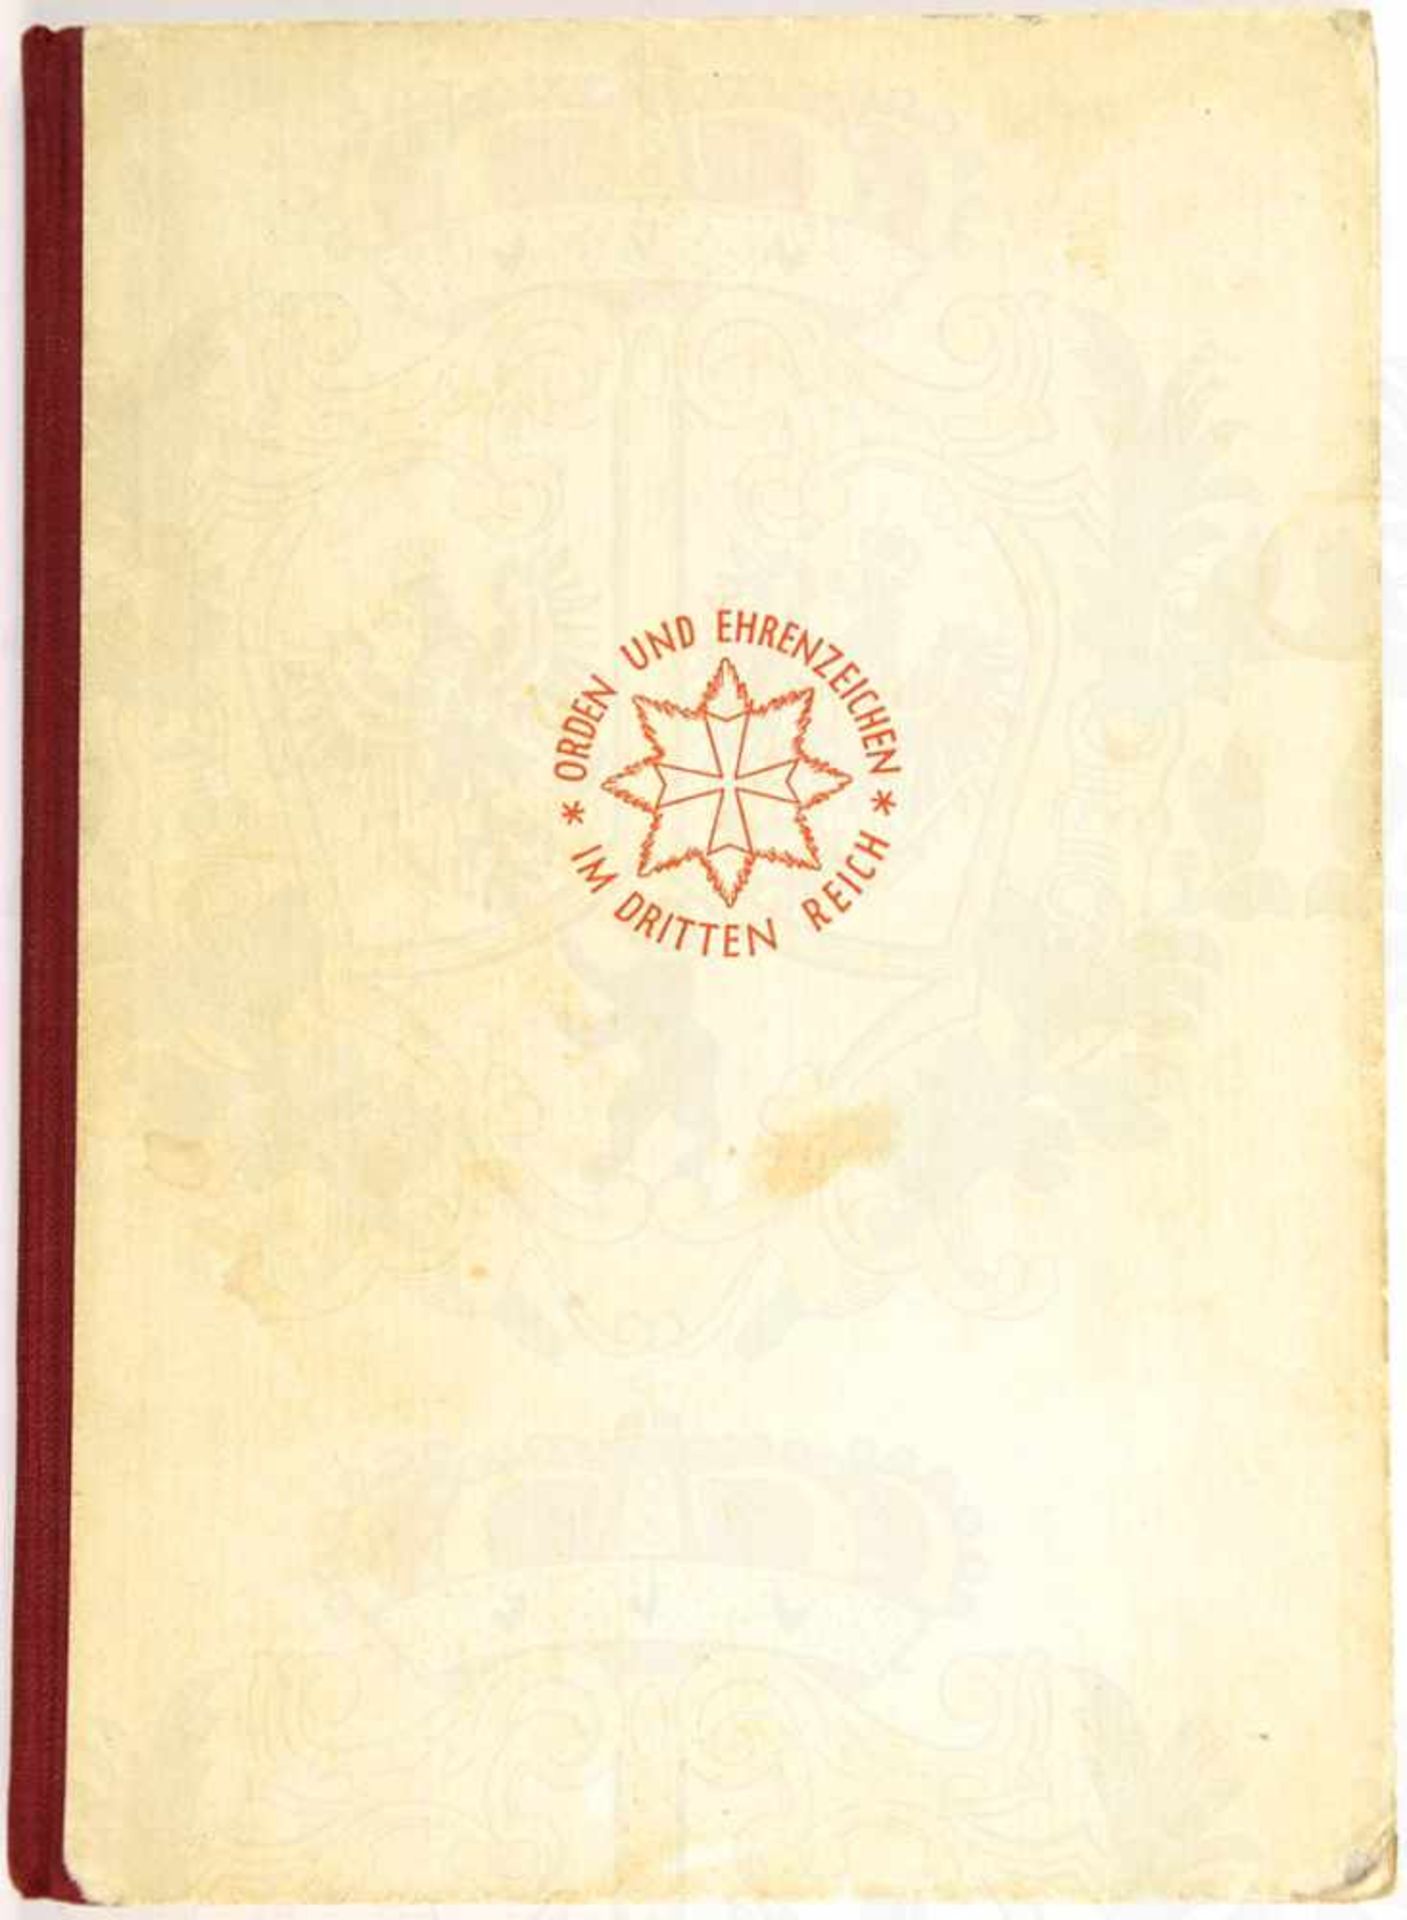 ORDEN UND EHRENZEICHEN IM DRITTEN REICH, H. Doehle, Berlin 1939, 88 S., zahlr. Abb., HLn., Einband